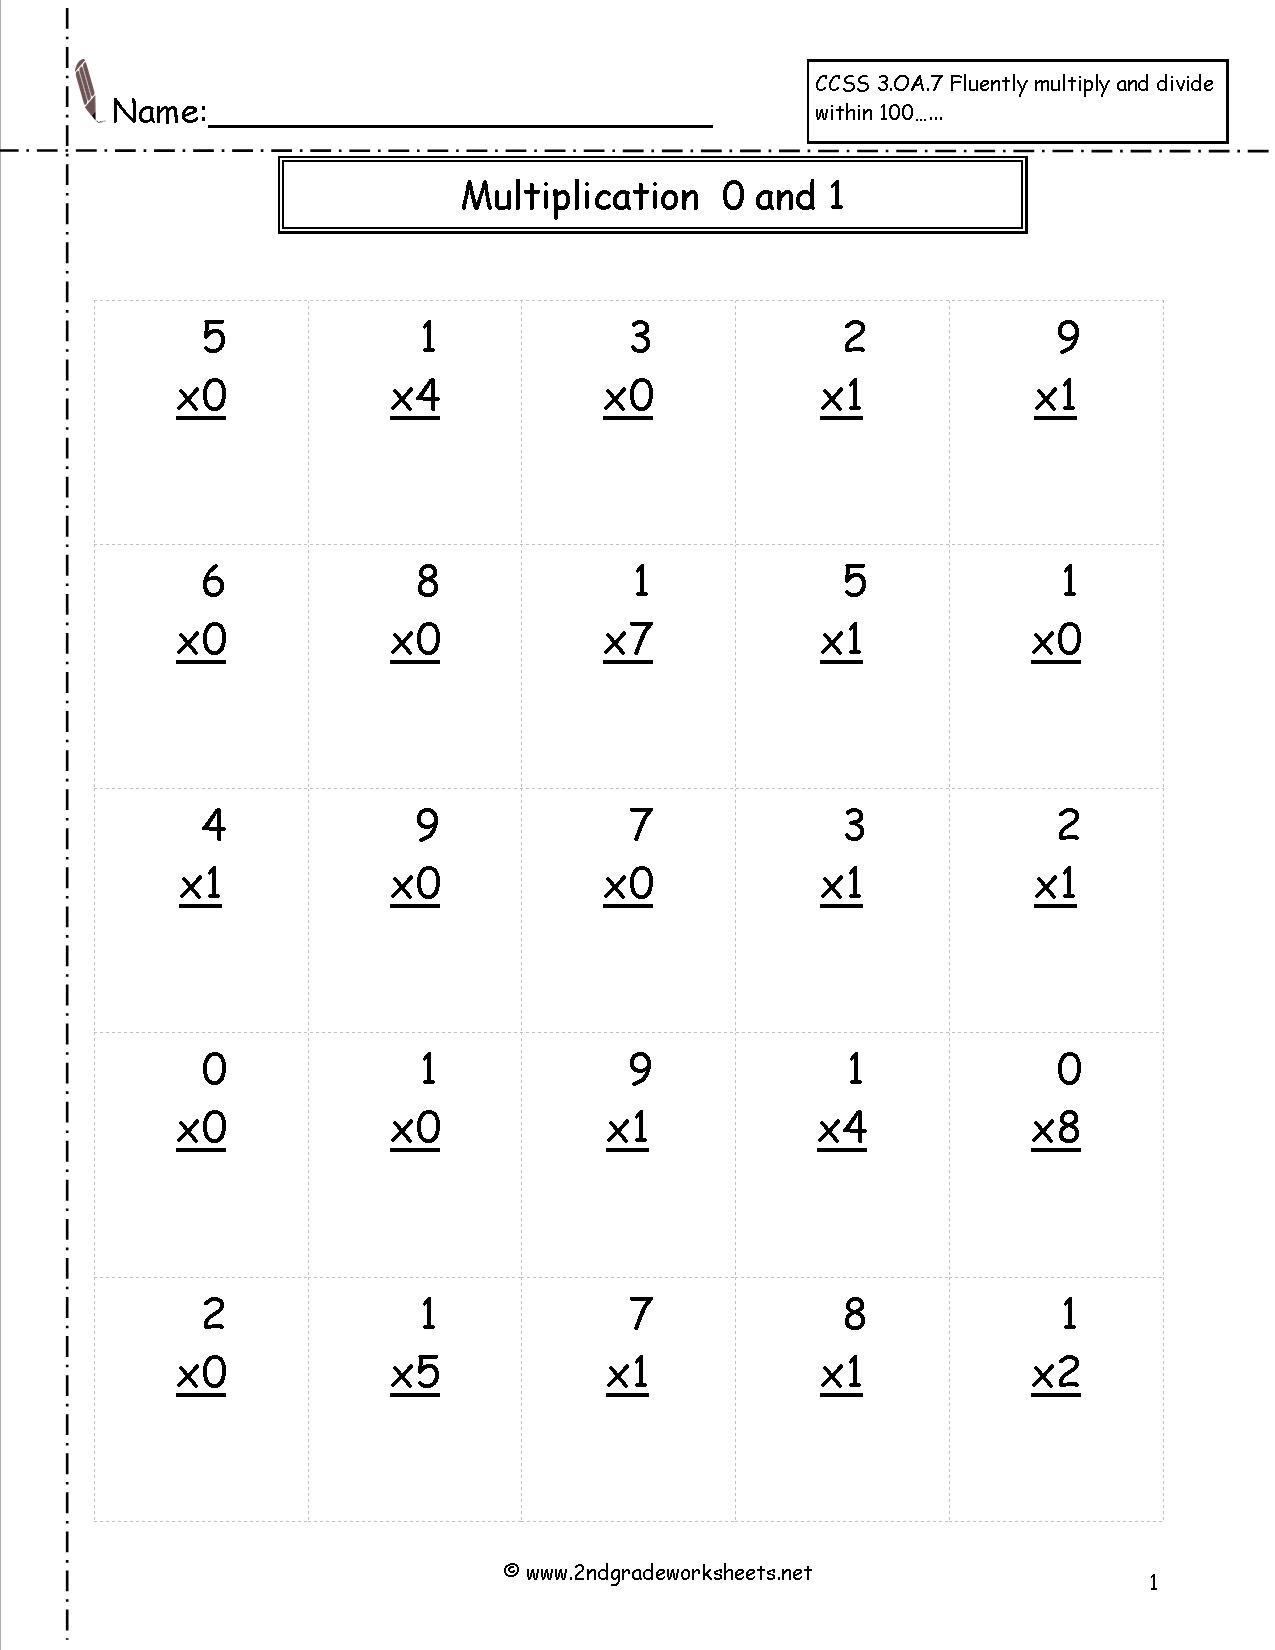 multiplication-worksheets-number-line-printable-multiplication-flash-cards